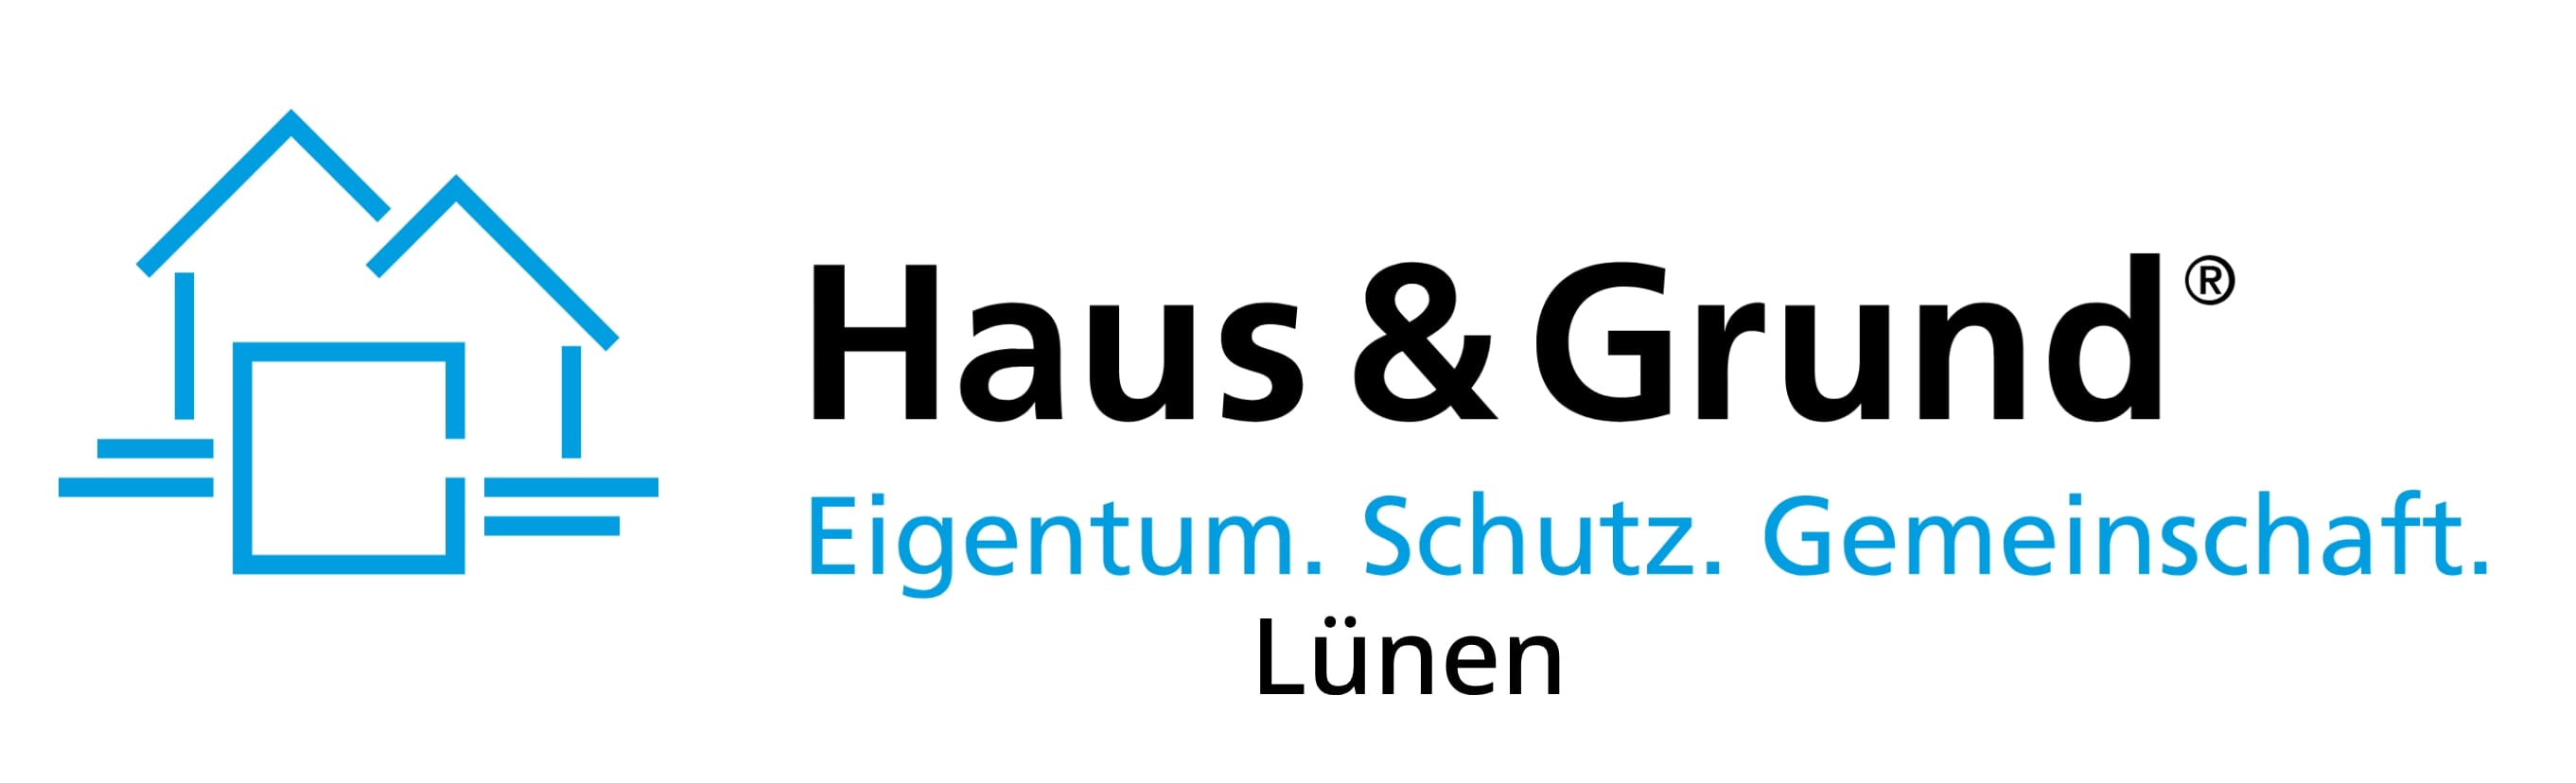 Haus & Grund logo